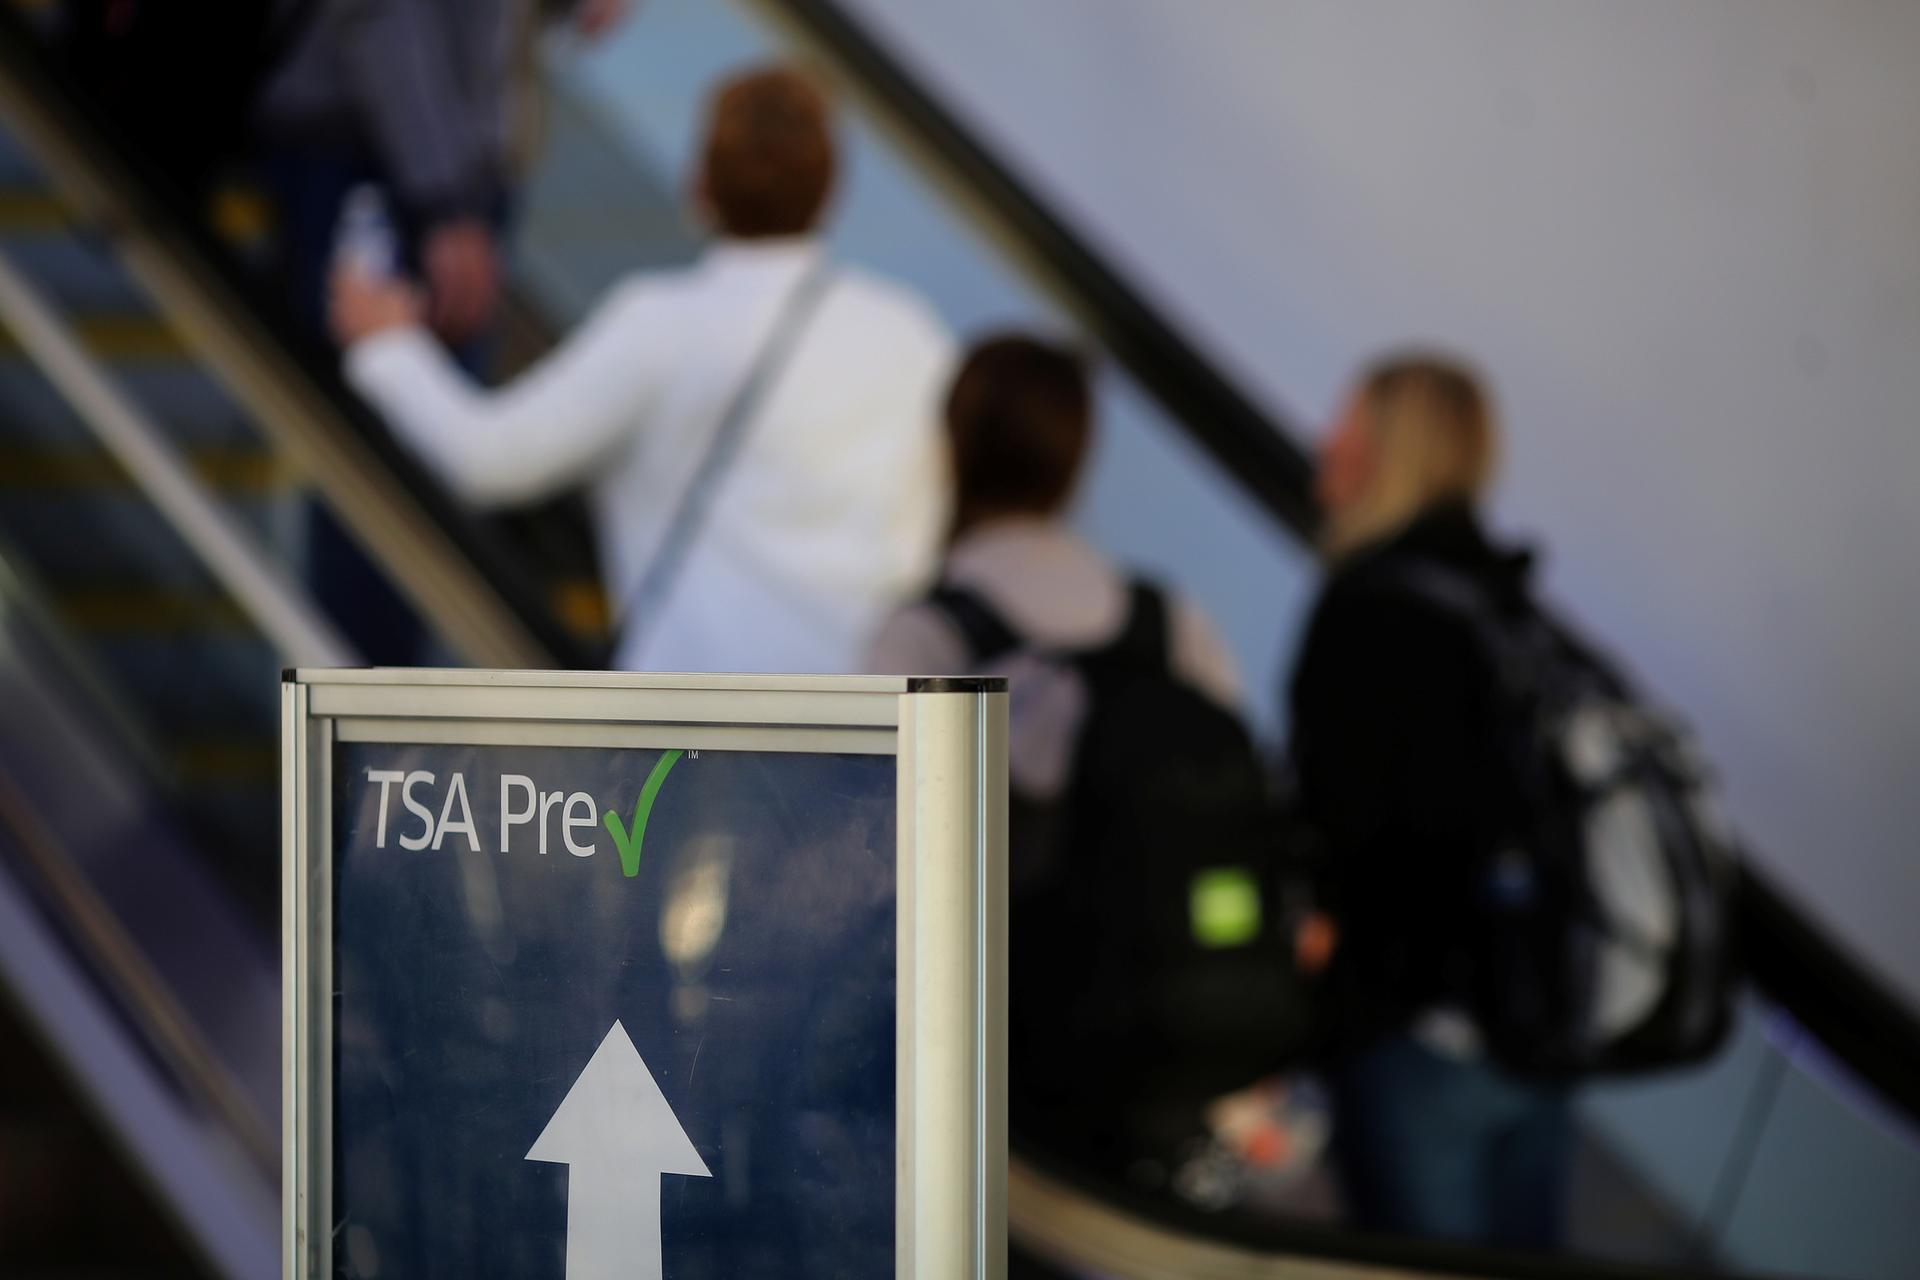 TSA Pre-check sign in front of escalator